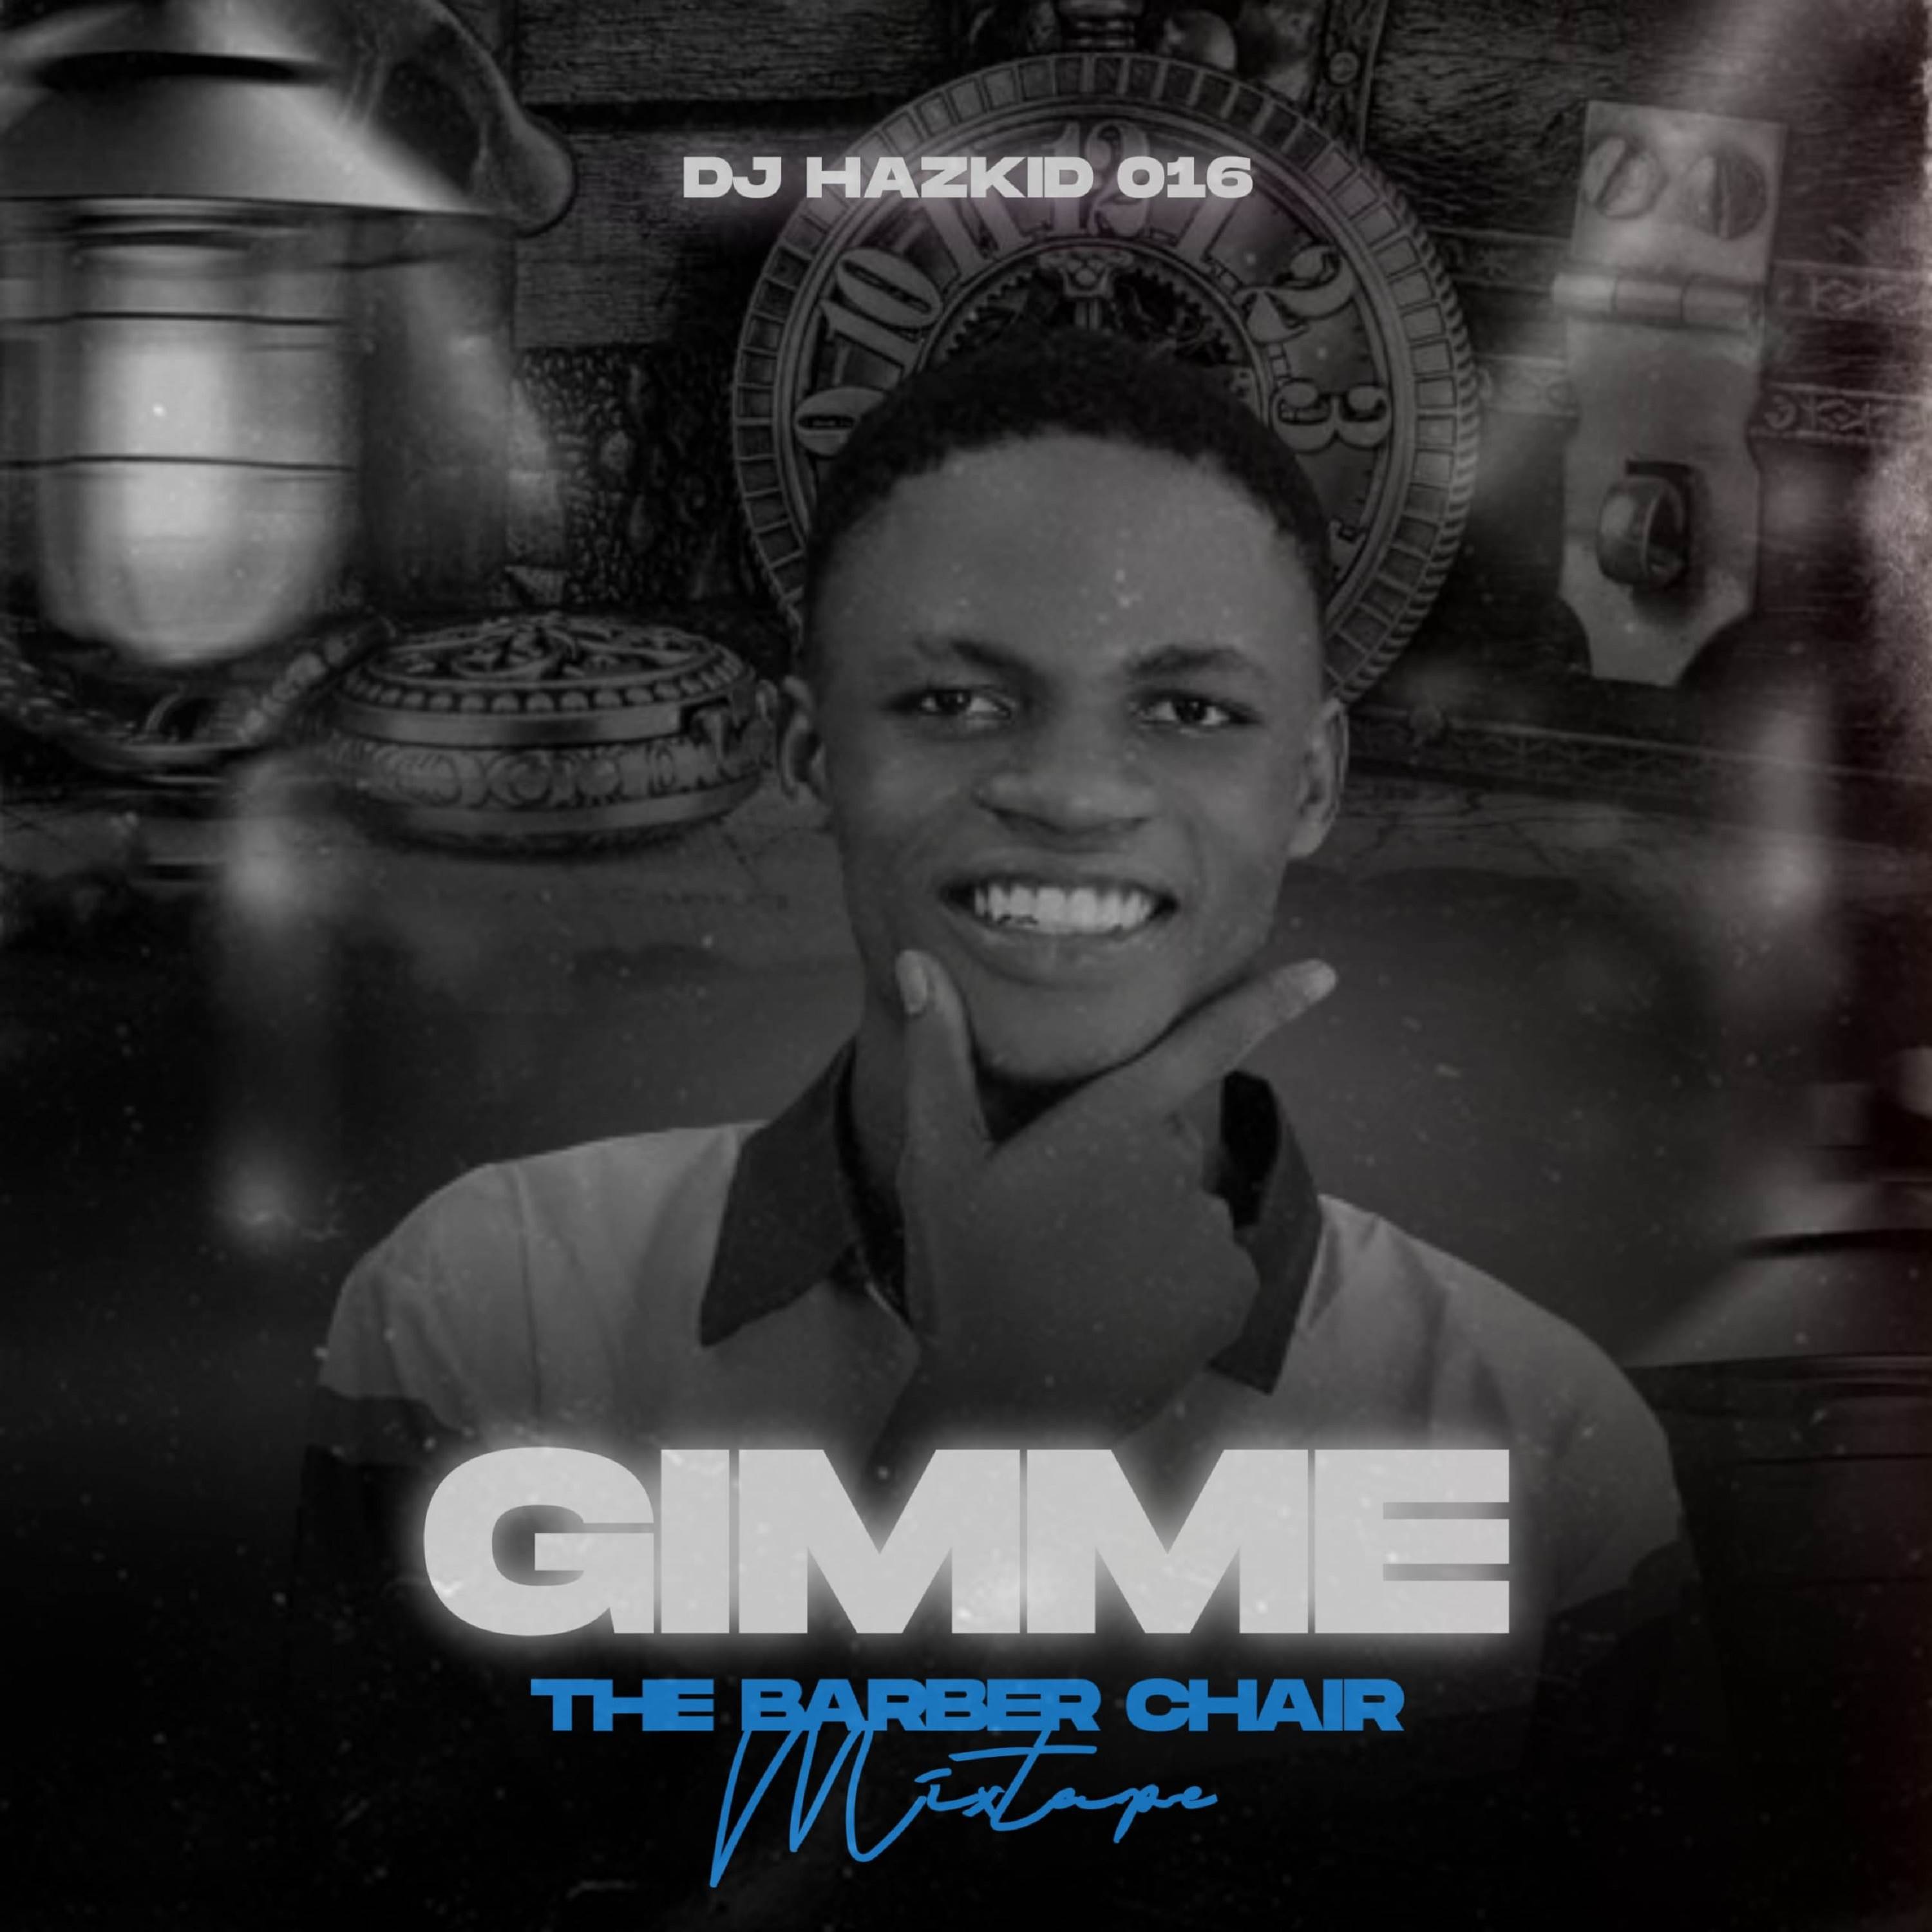 Dj Hazkid 016 - Gimme The Barber Chair Pt 1